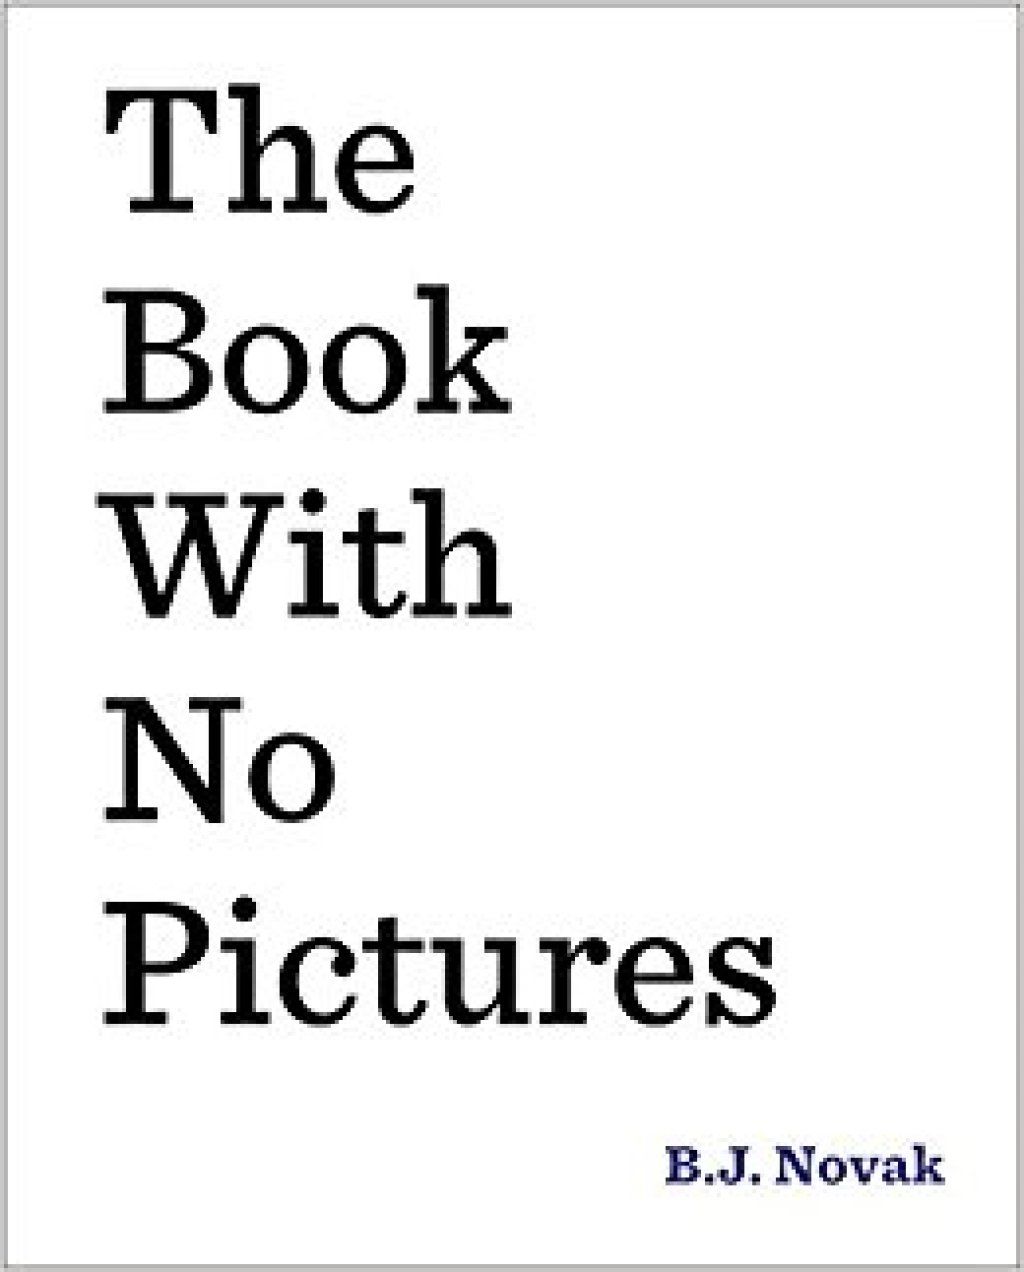 Cartea fără imagini B.J. Novak Glume de la copii